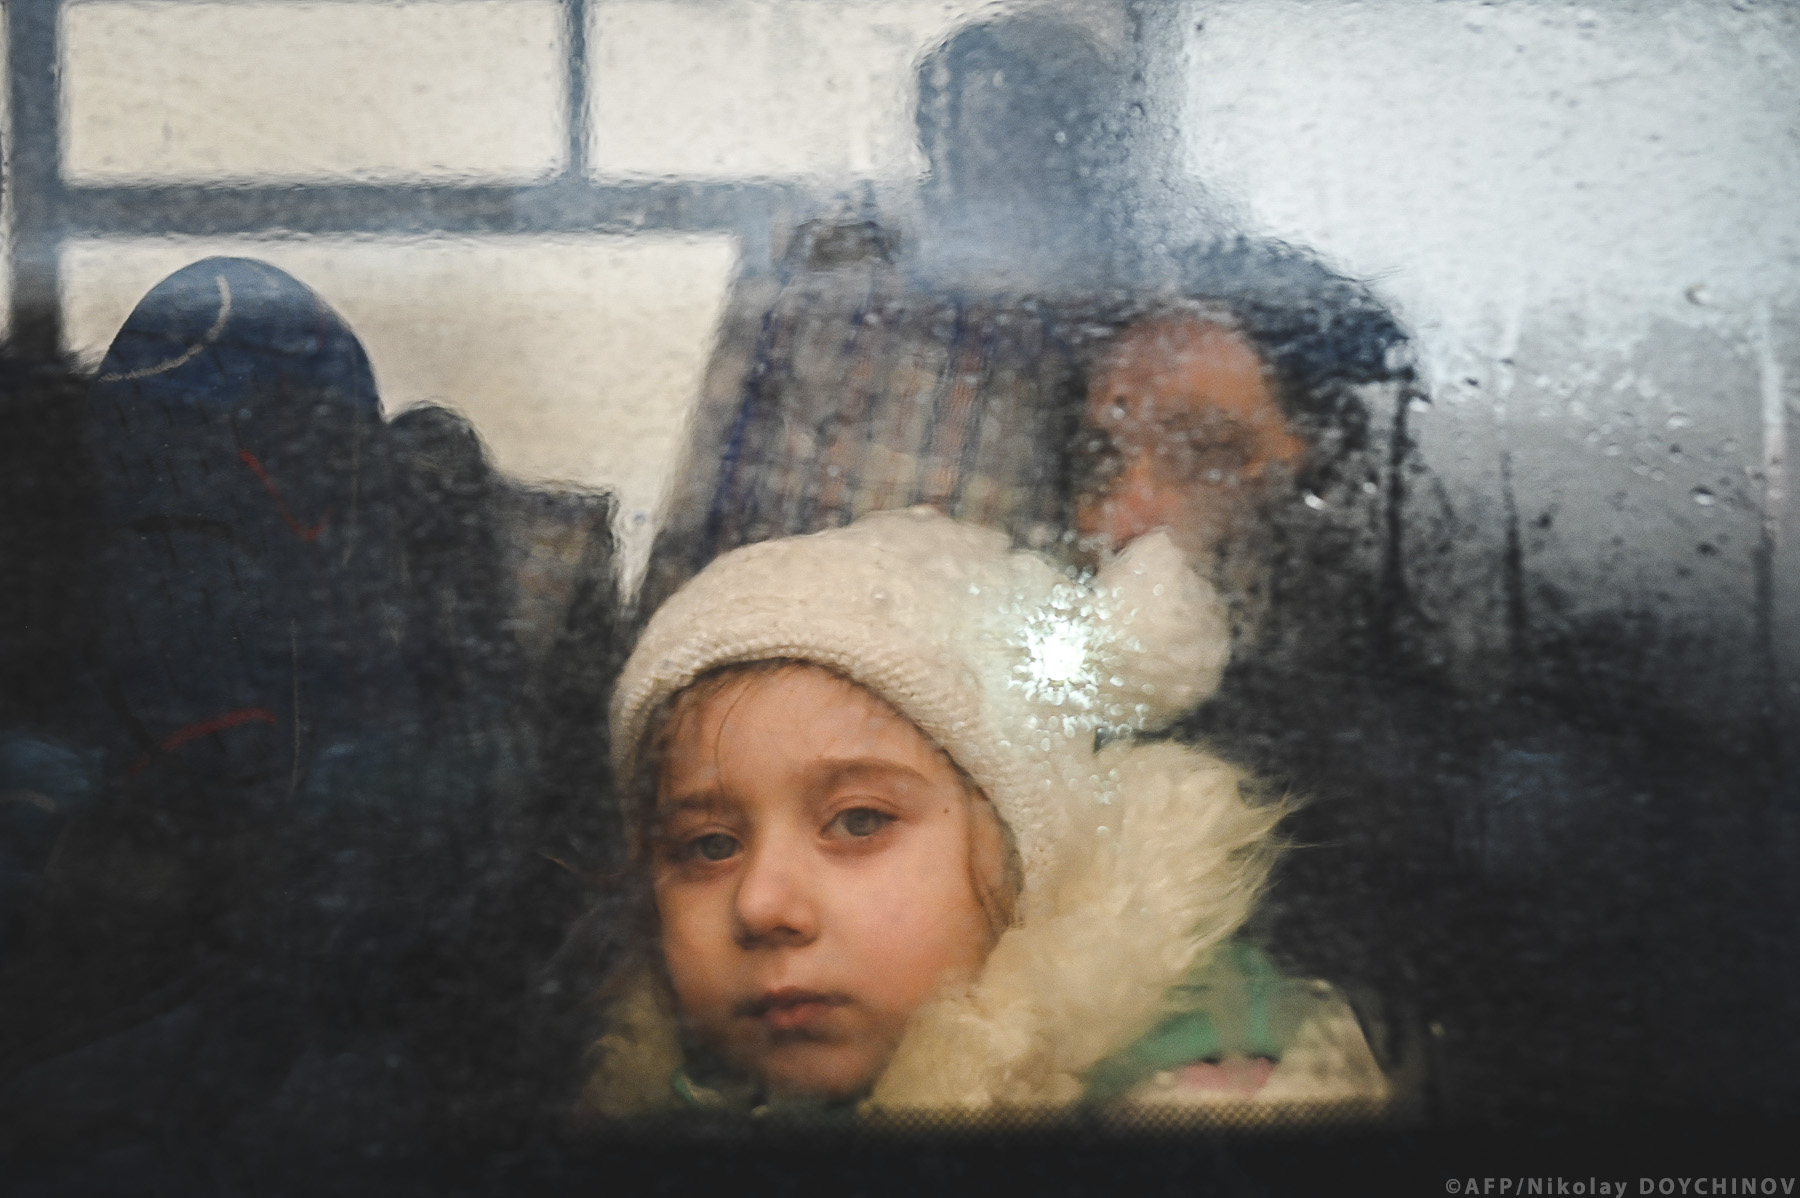 ΕΕ: Ιστοσελίδα για τα δικαιώματα των Ουκρανών προσφύγων στην Ευρωπαϊκή Ένωση